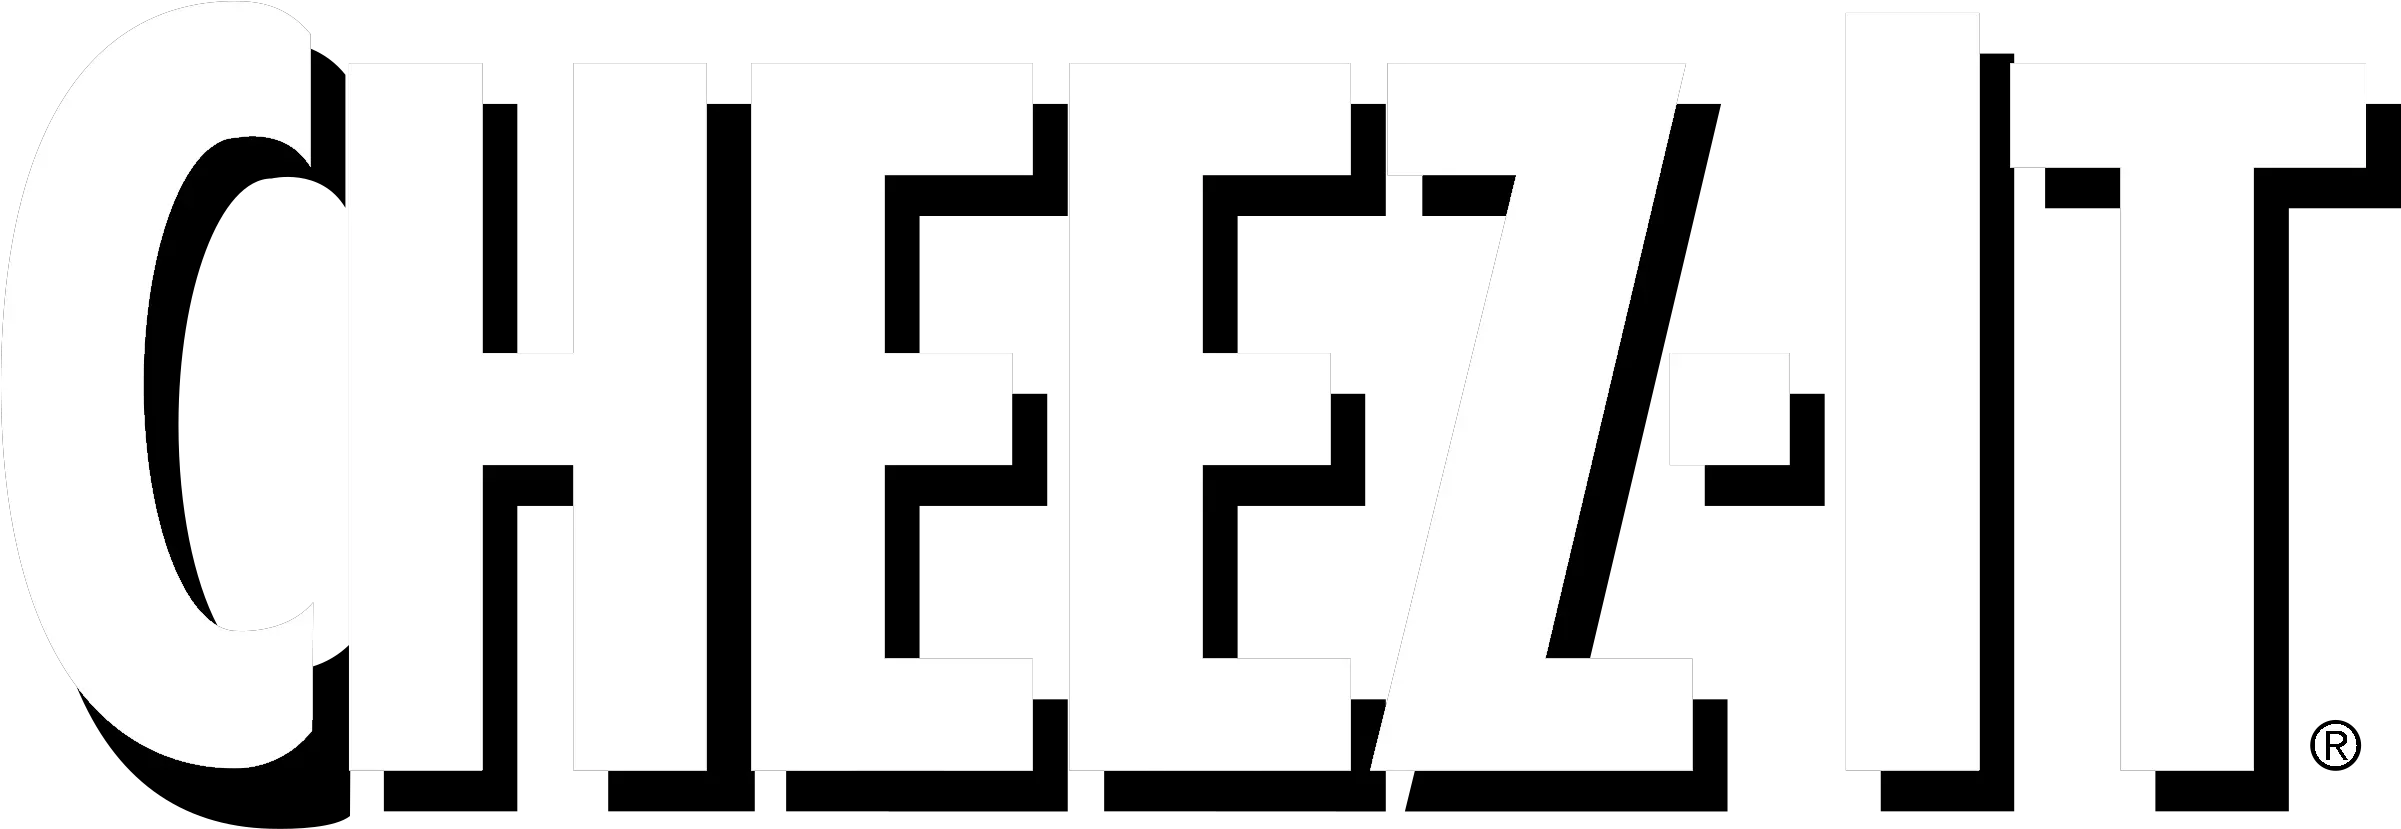 Cheez Cheez It Logo Transparent Png Cheez It Png